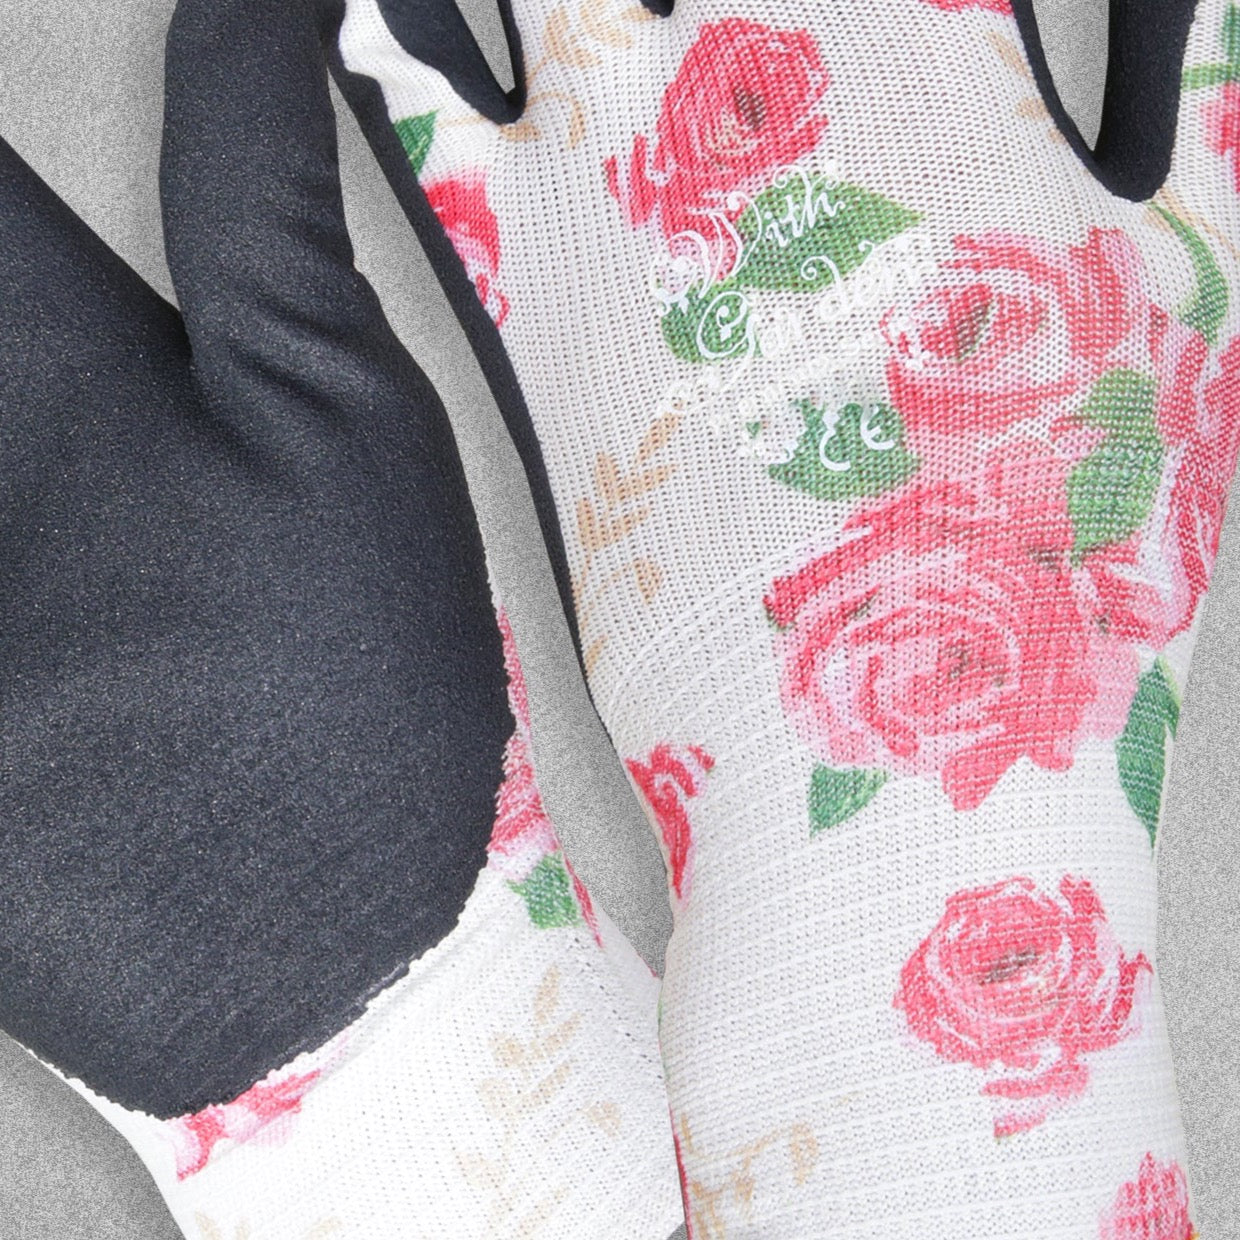 With Garden Premium Luminus Garden gloves - Rose design